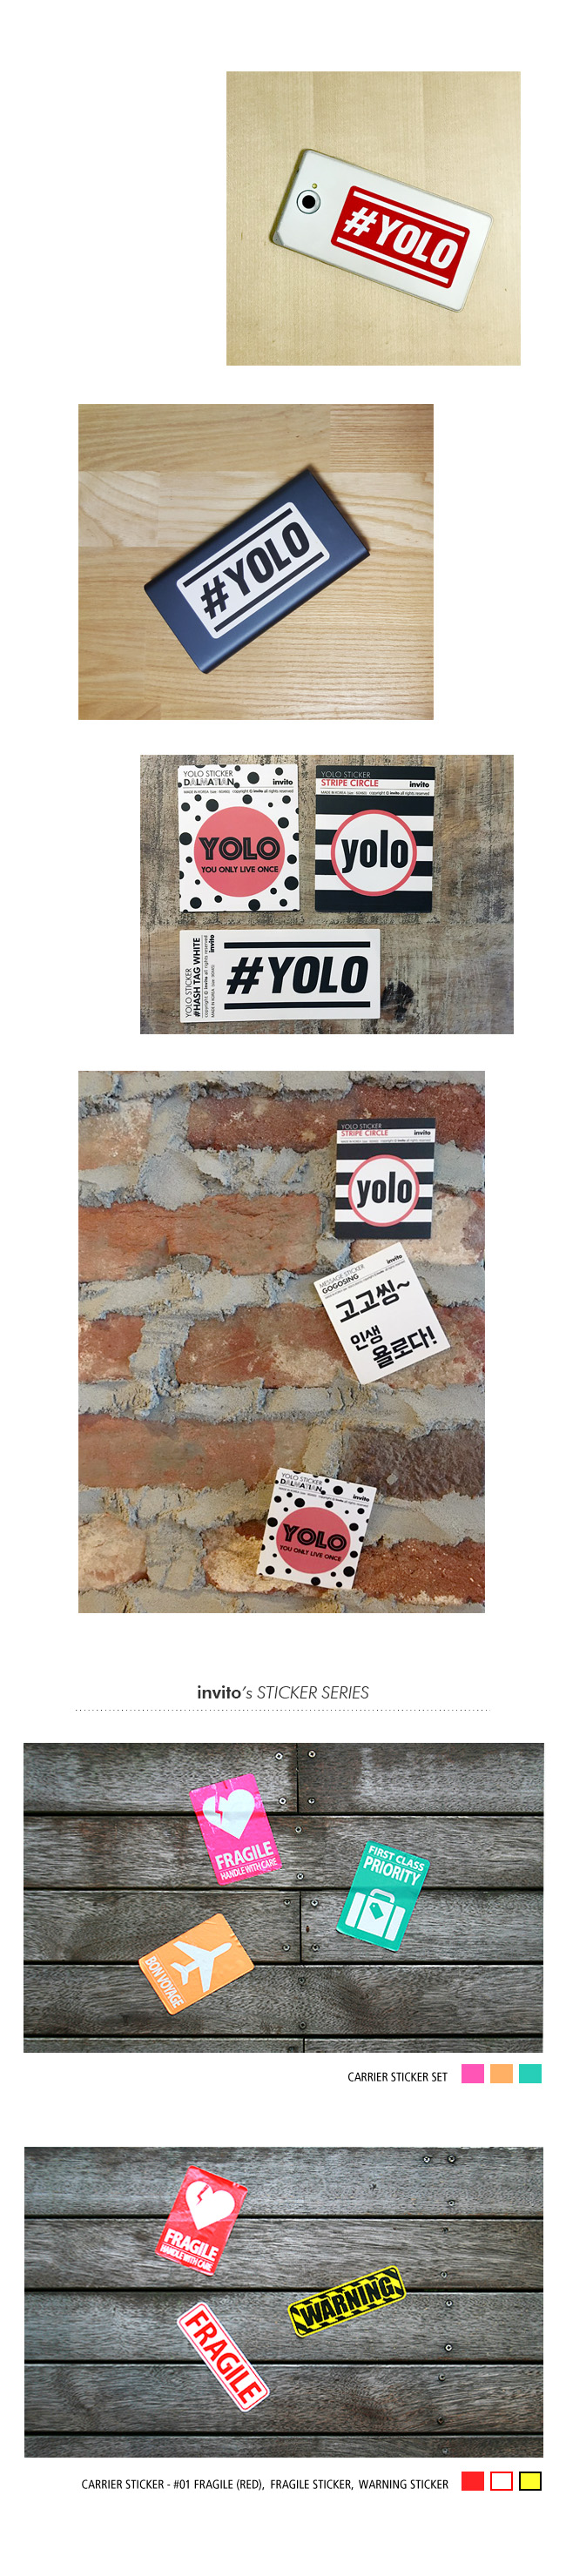 YOLO sticker 욜로 스티커 800원 - 인비토 디자인문구, 데코레이션, 스티커, 디자인스티커 바보사랑 YOLO sticker 욜로 스티커 800원 - 인비토 디자인문구, 데코레이션, 스티커, 디자인스티커 바보사랑